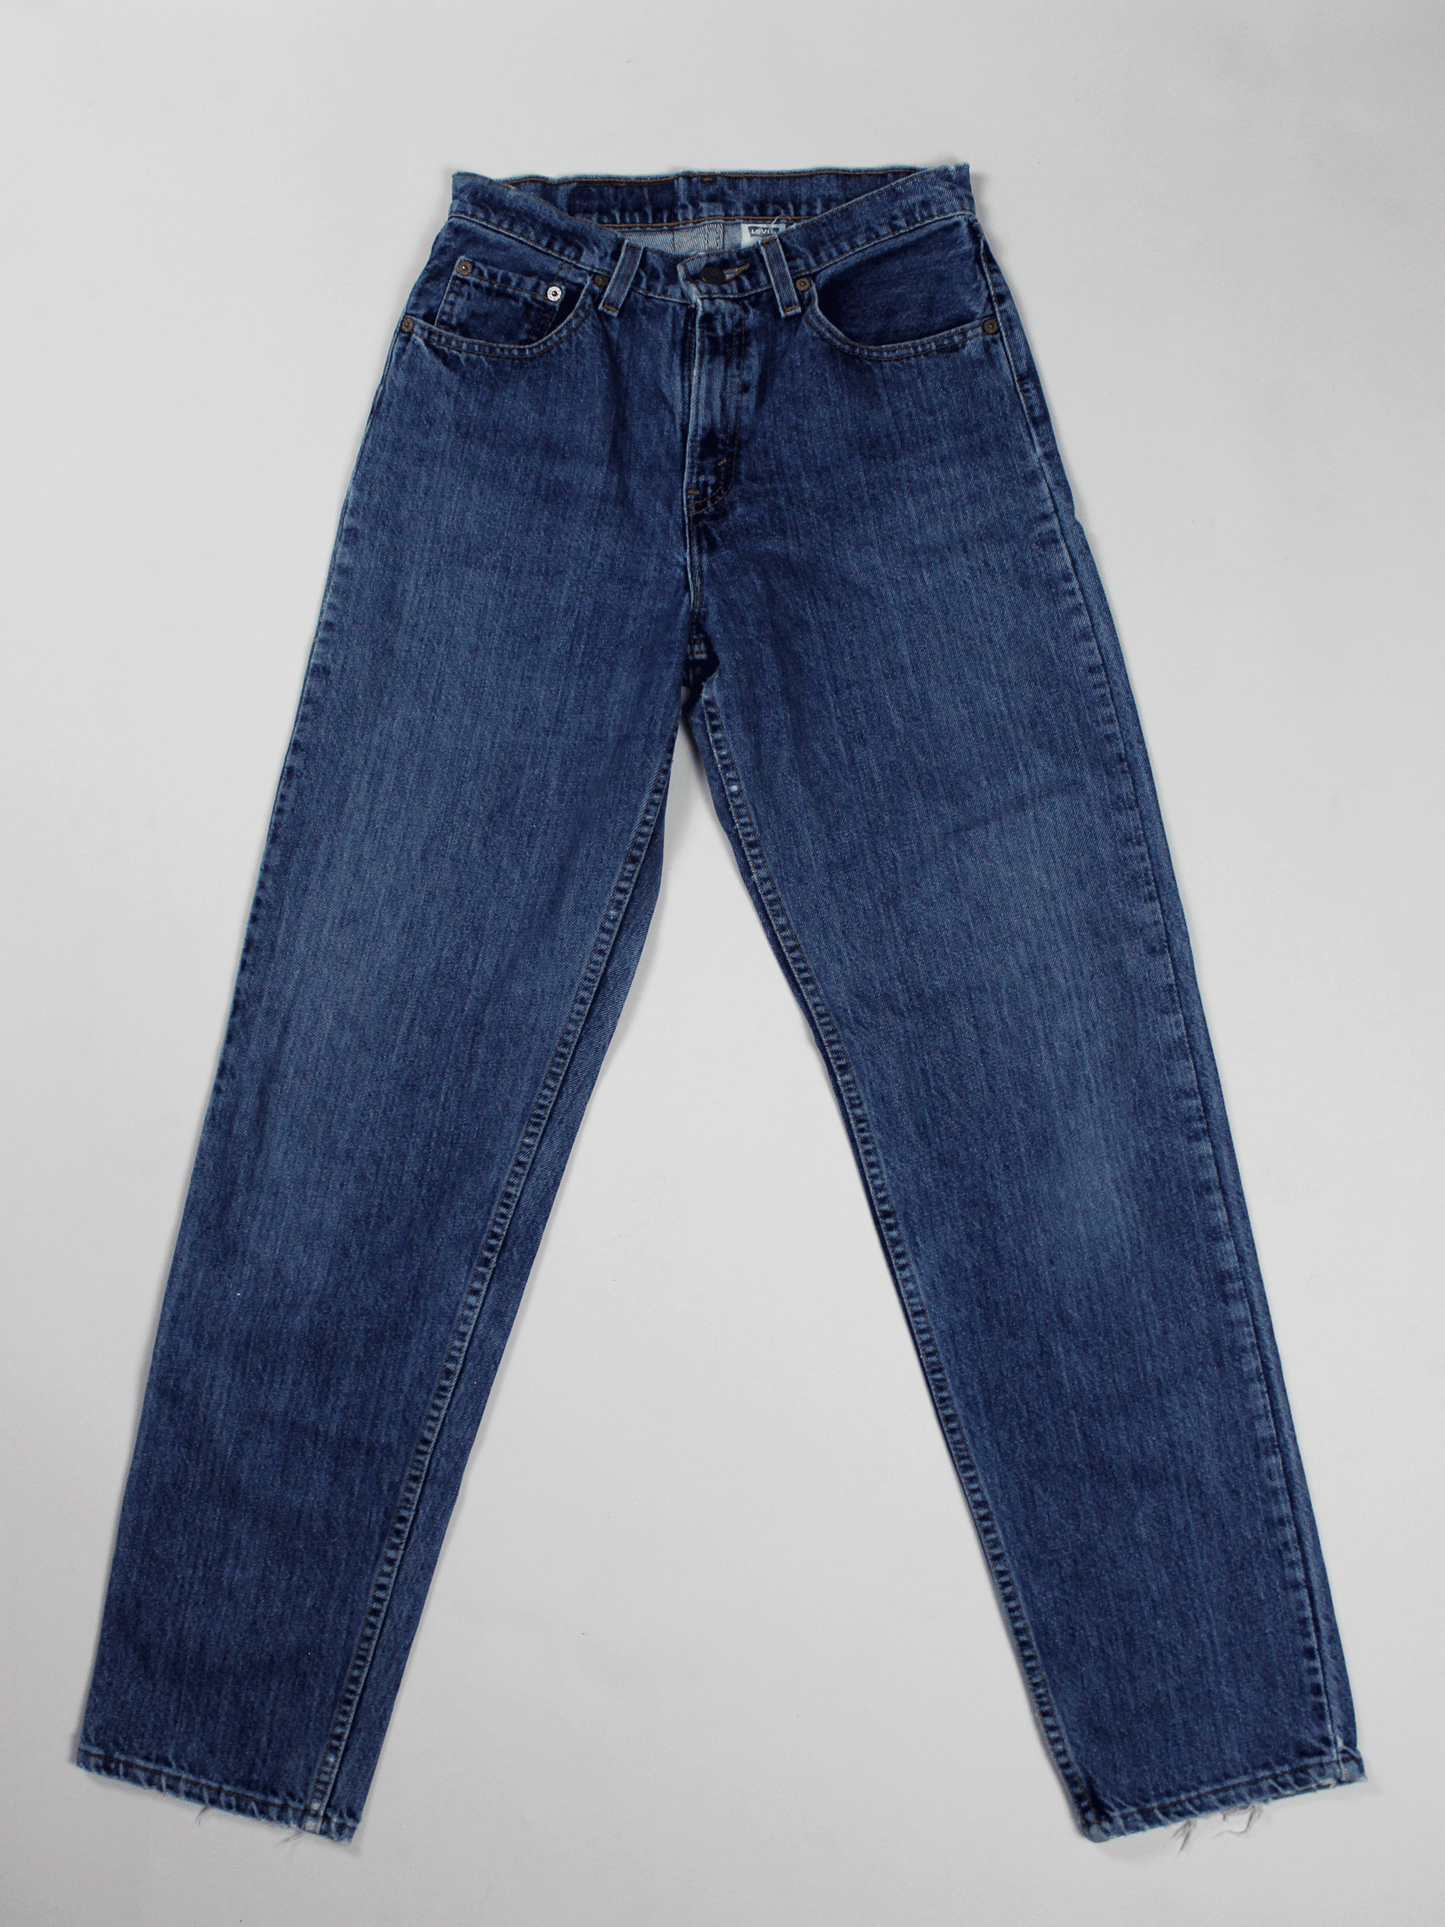 Levi's 560 Vintage Jeans